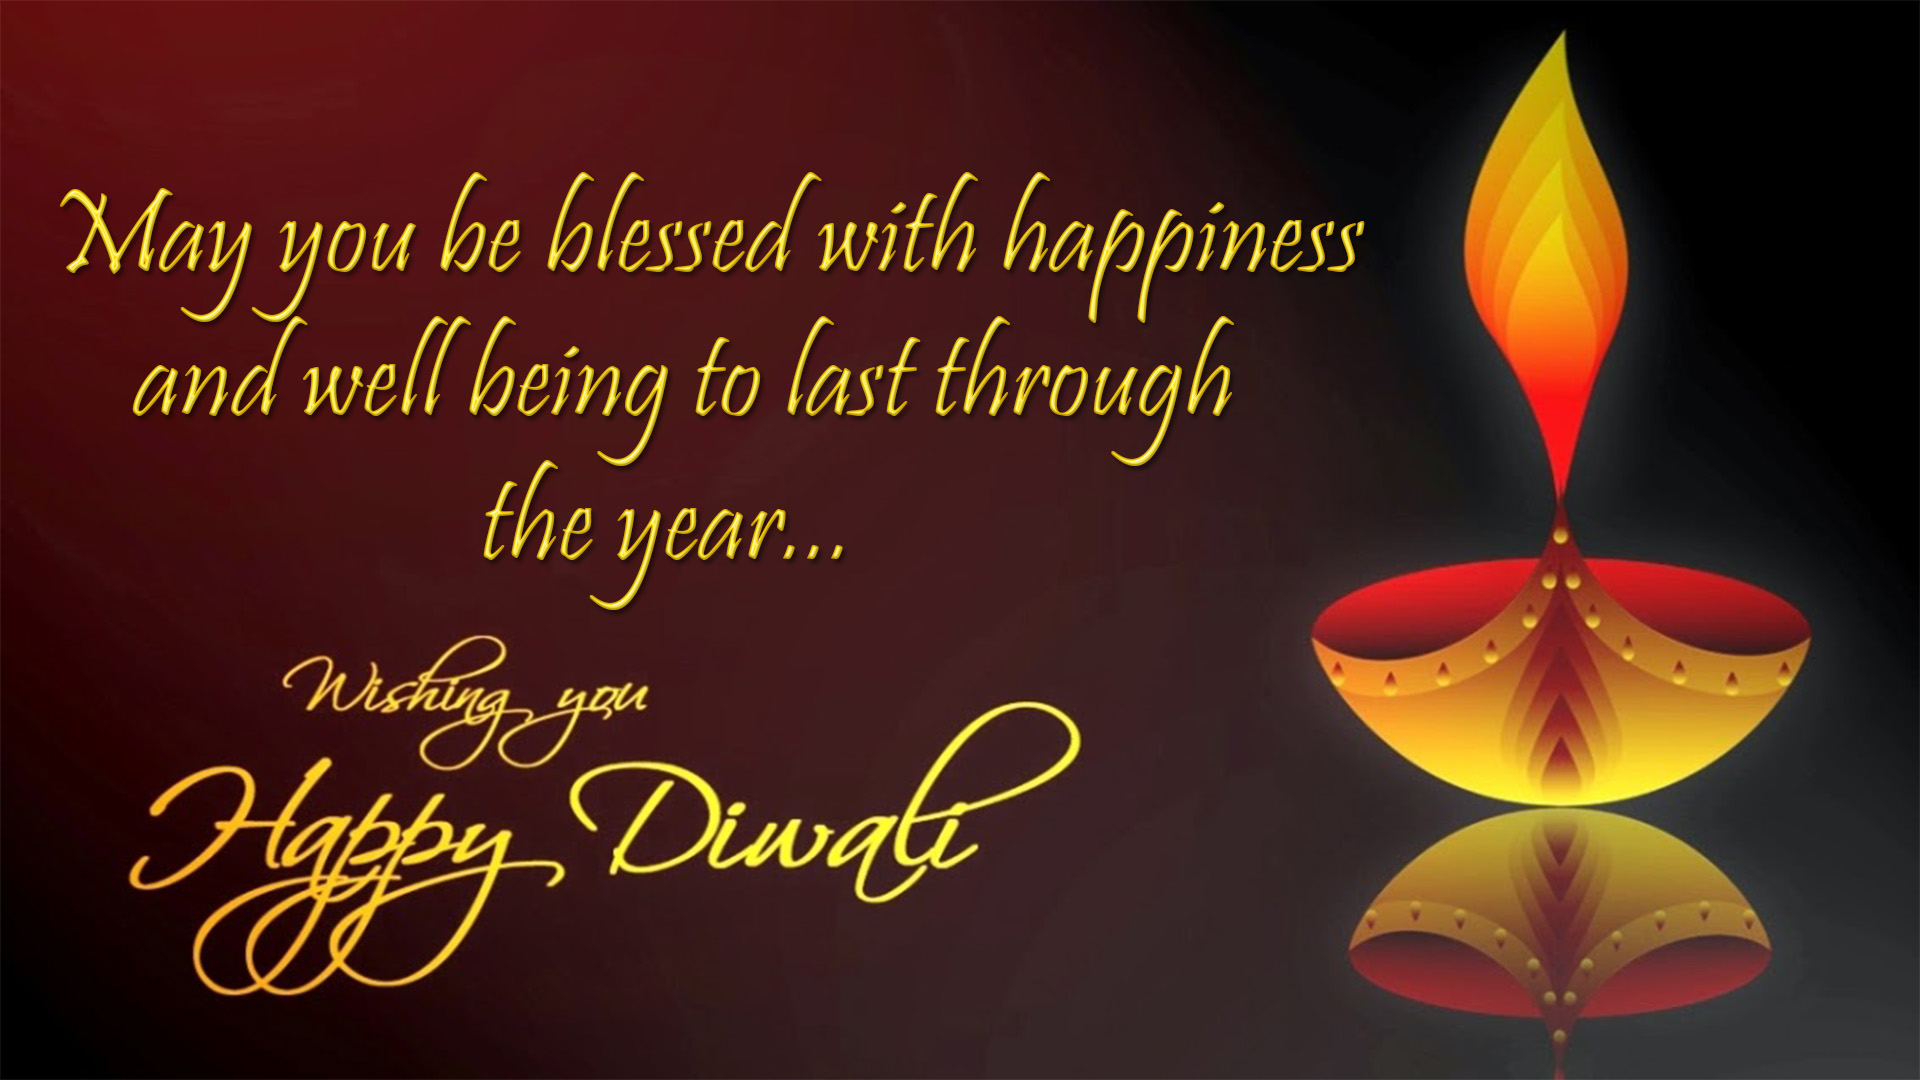 happy diwali wishes image